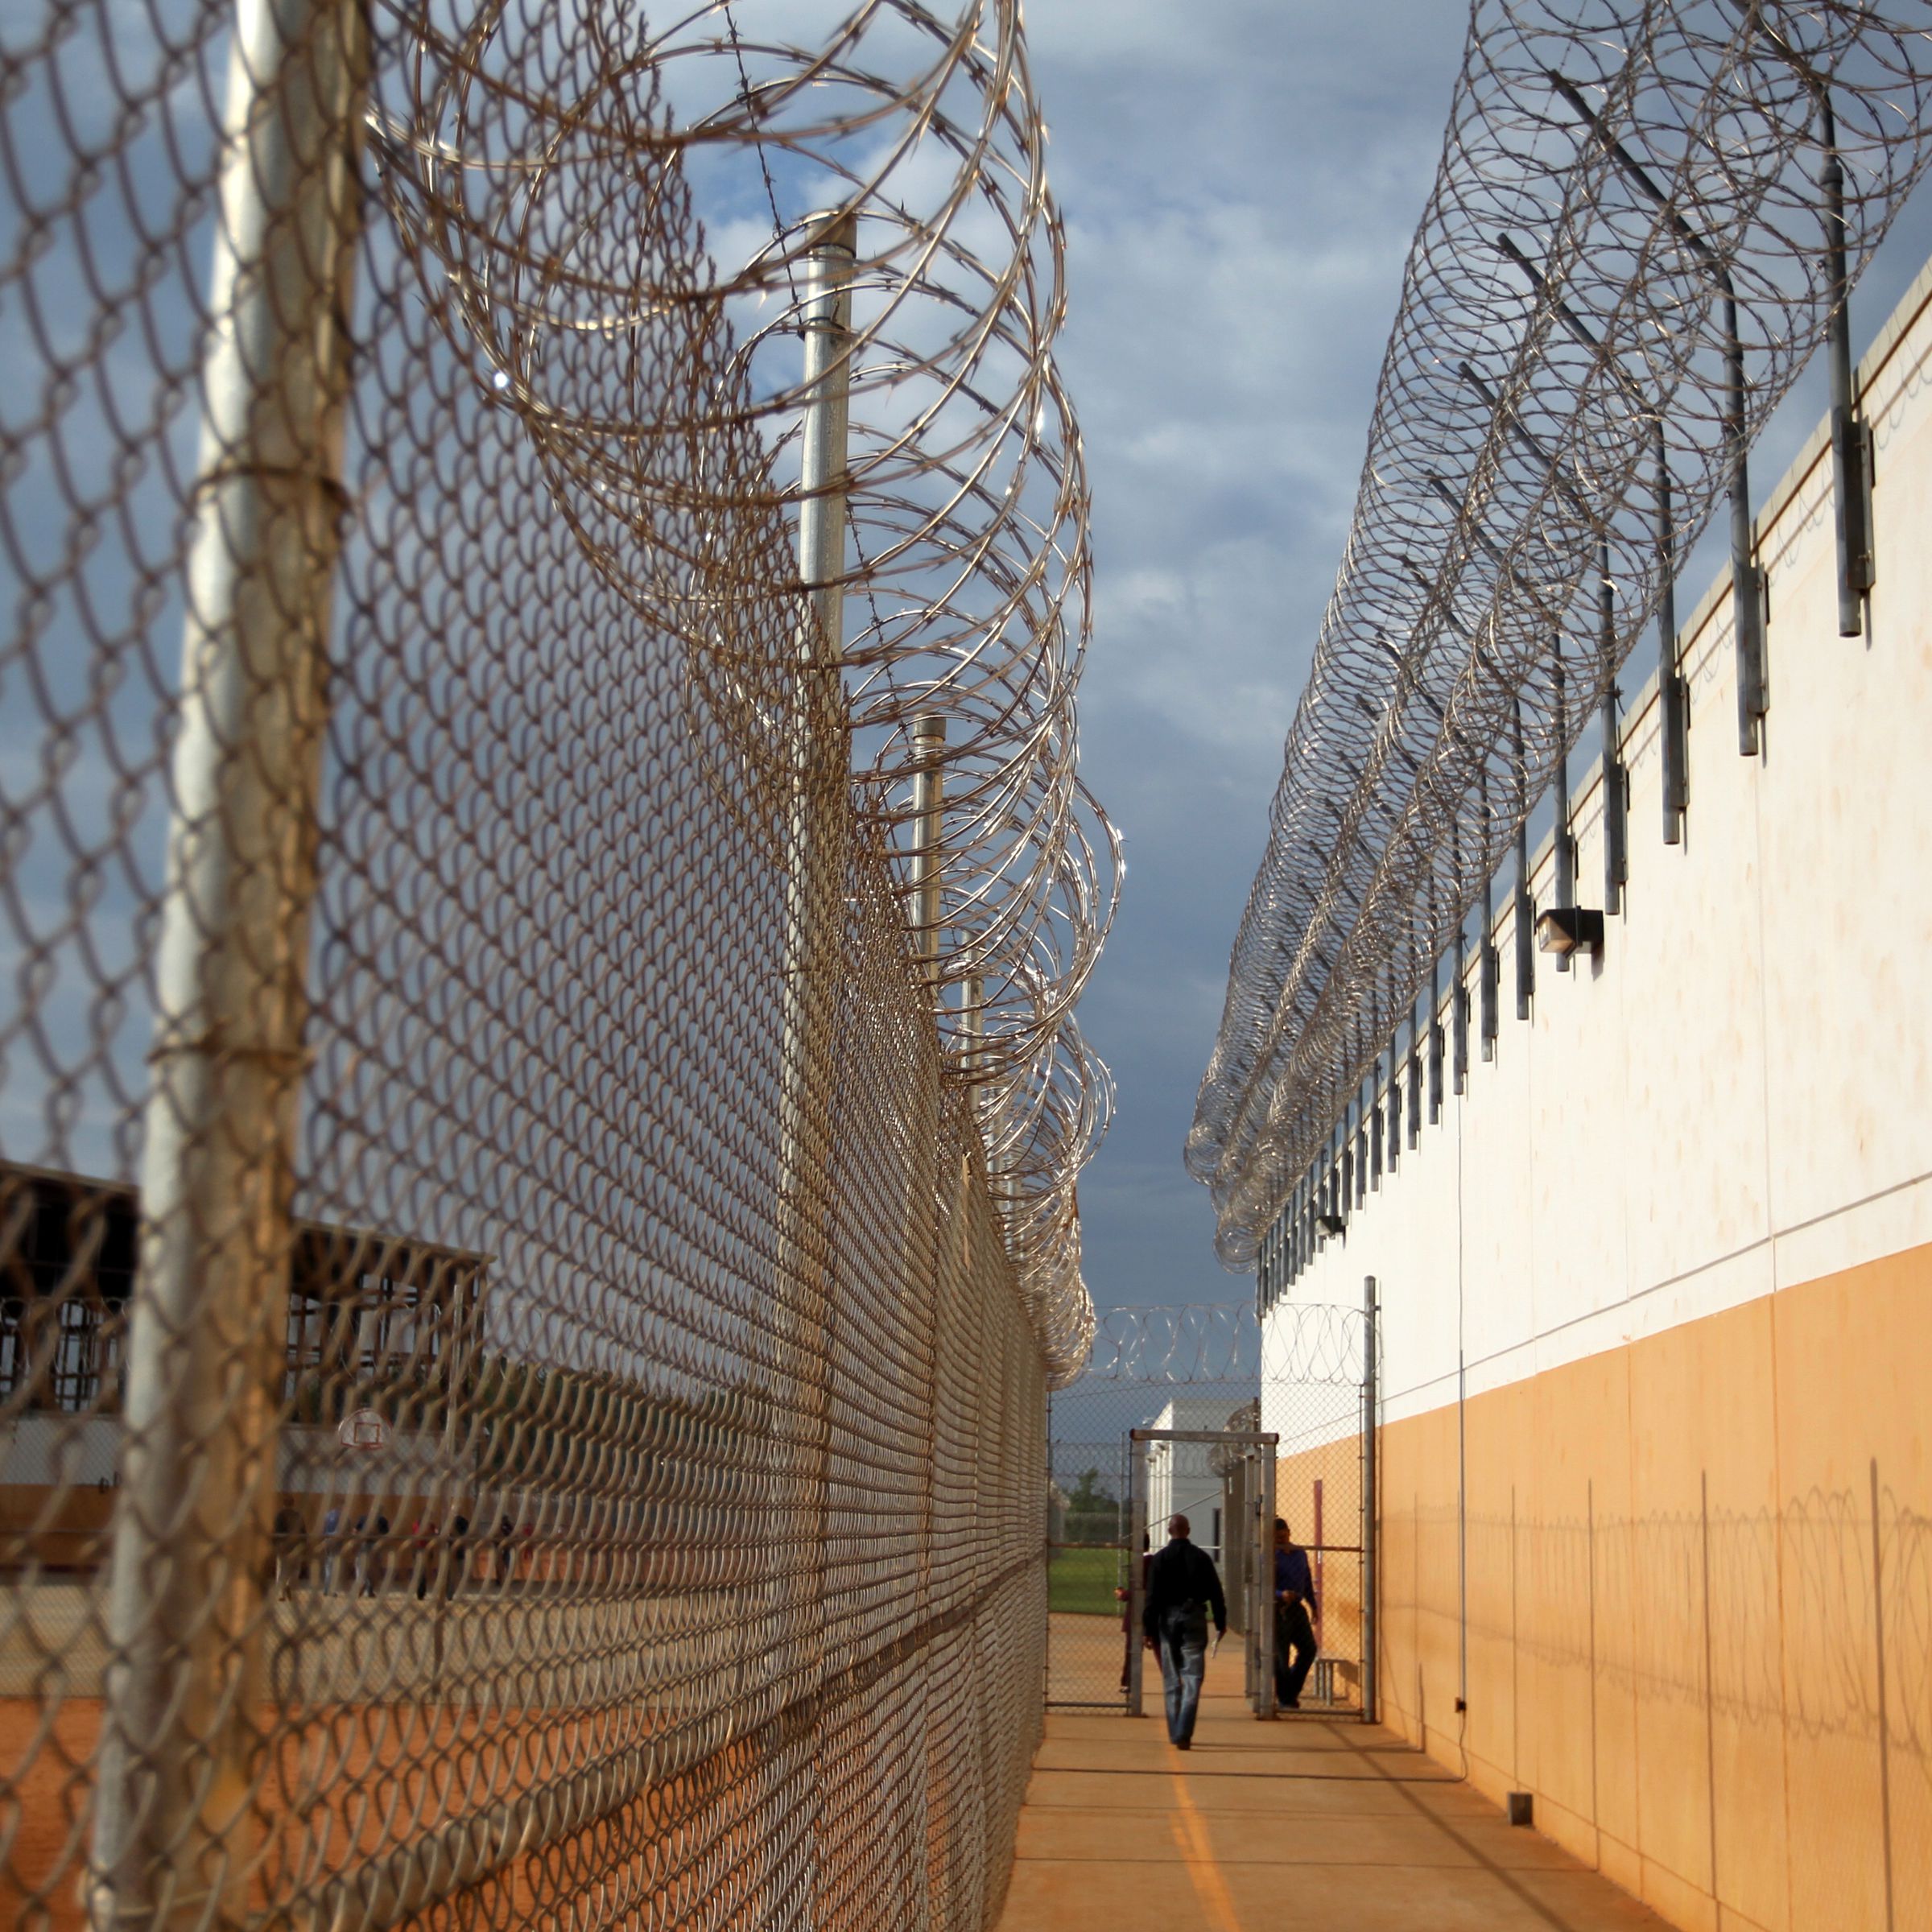 LUMPKIN, GA - MAY 4: The Stewart Detention Center in Lumpkin, Ga.